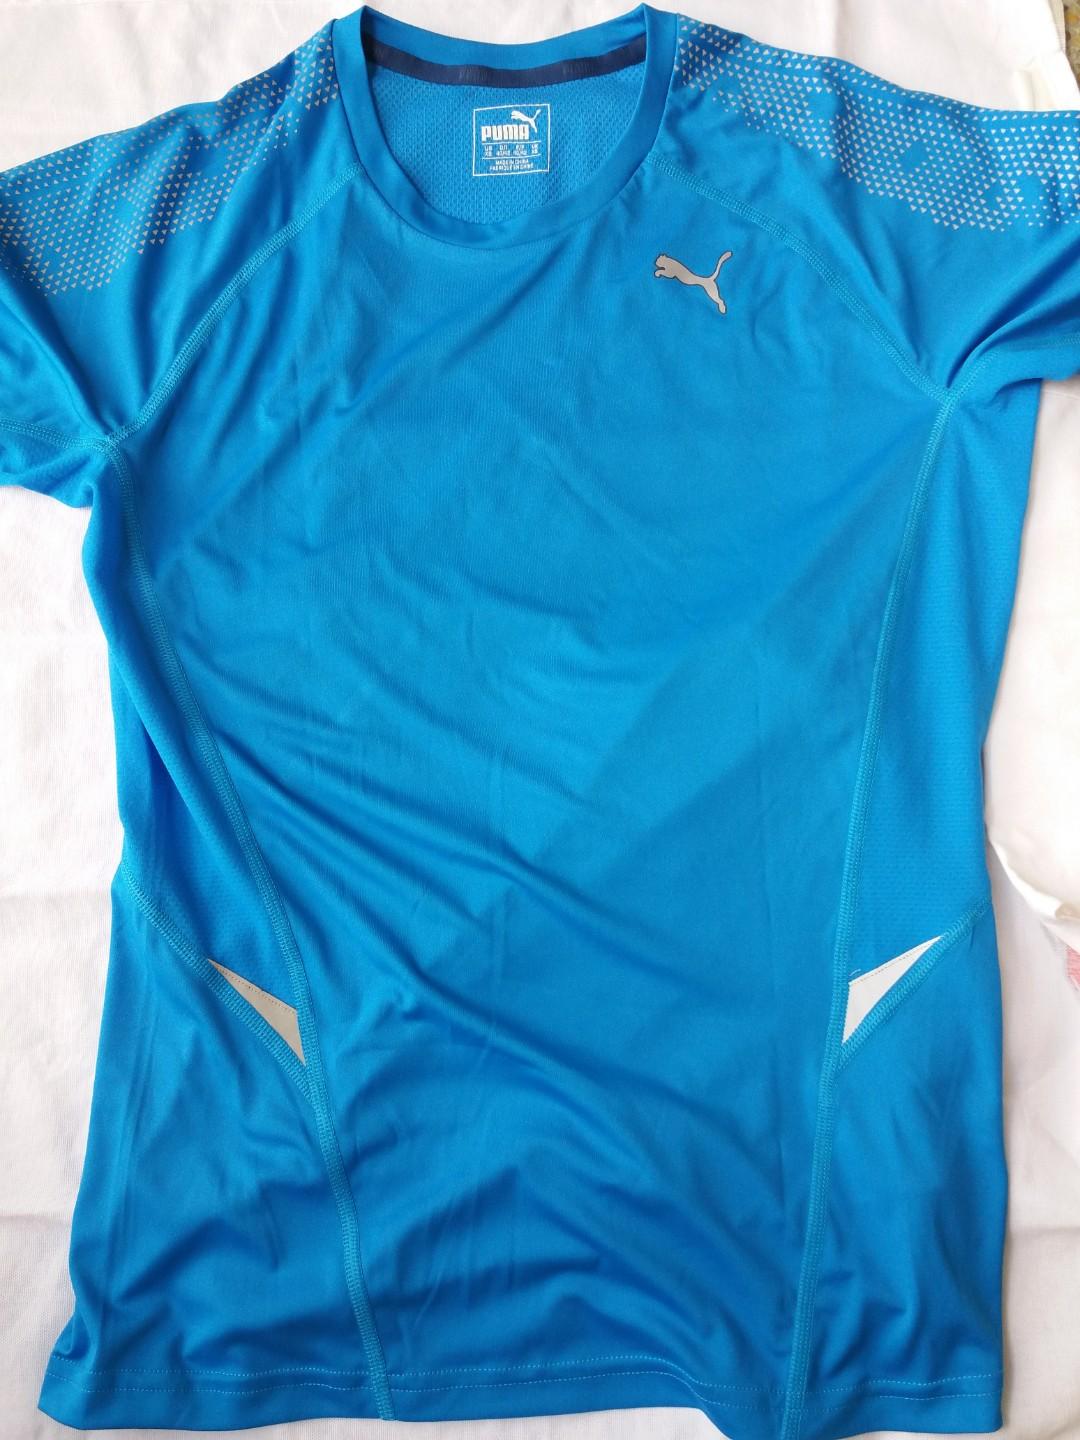 Puma Dri- Fit Shirt (Women's), Sports 